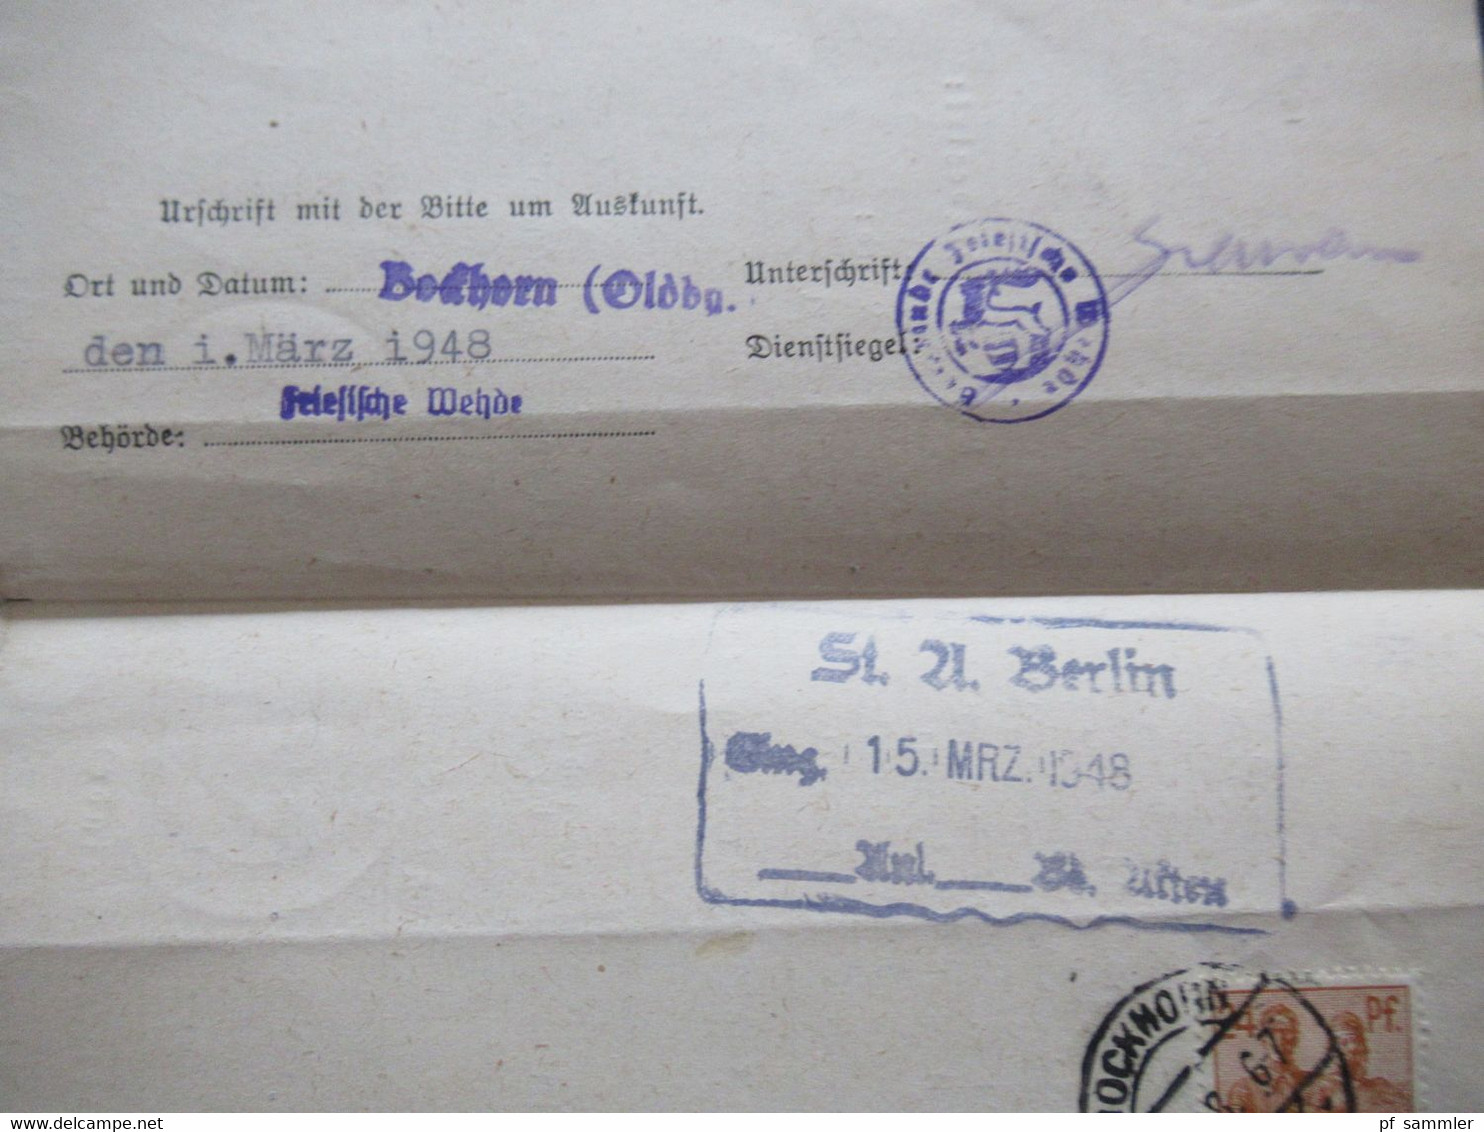 All. Besetzung Berlin 19.3.1948 Absender Strafregister der Staatsanwaltschaft Berlin nach Bockhorn in Oldenburg